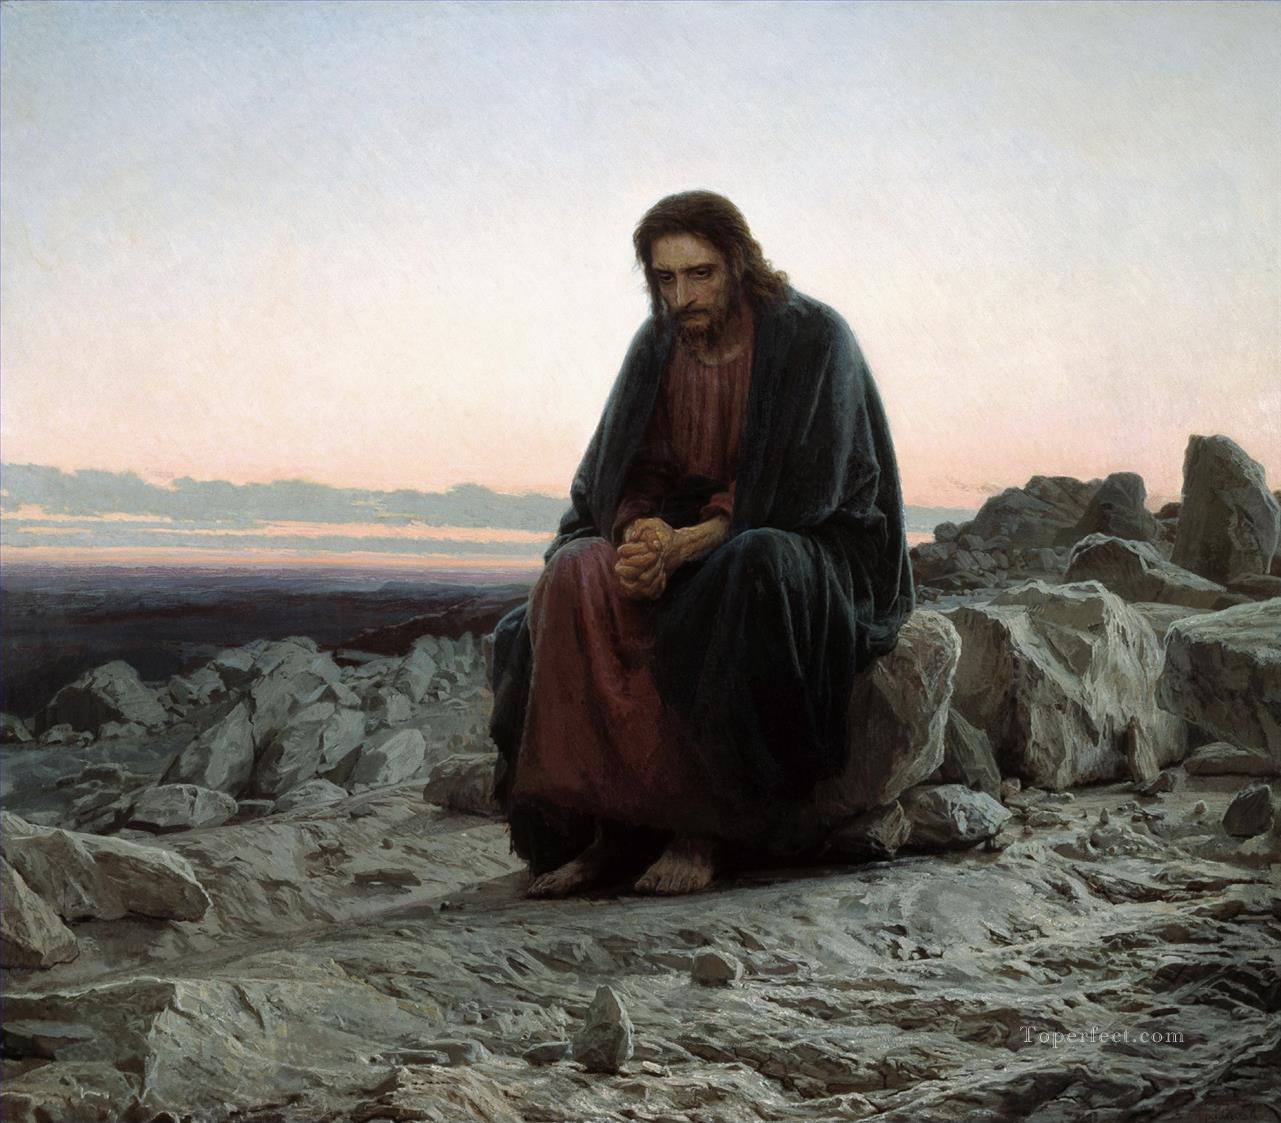 イエス 荒野の先見の明のある指導者 イワン・クラムスコイ 宗教的キリスト教徒油絵